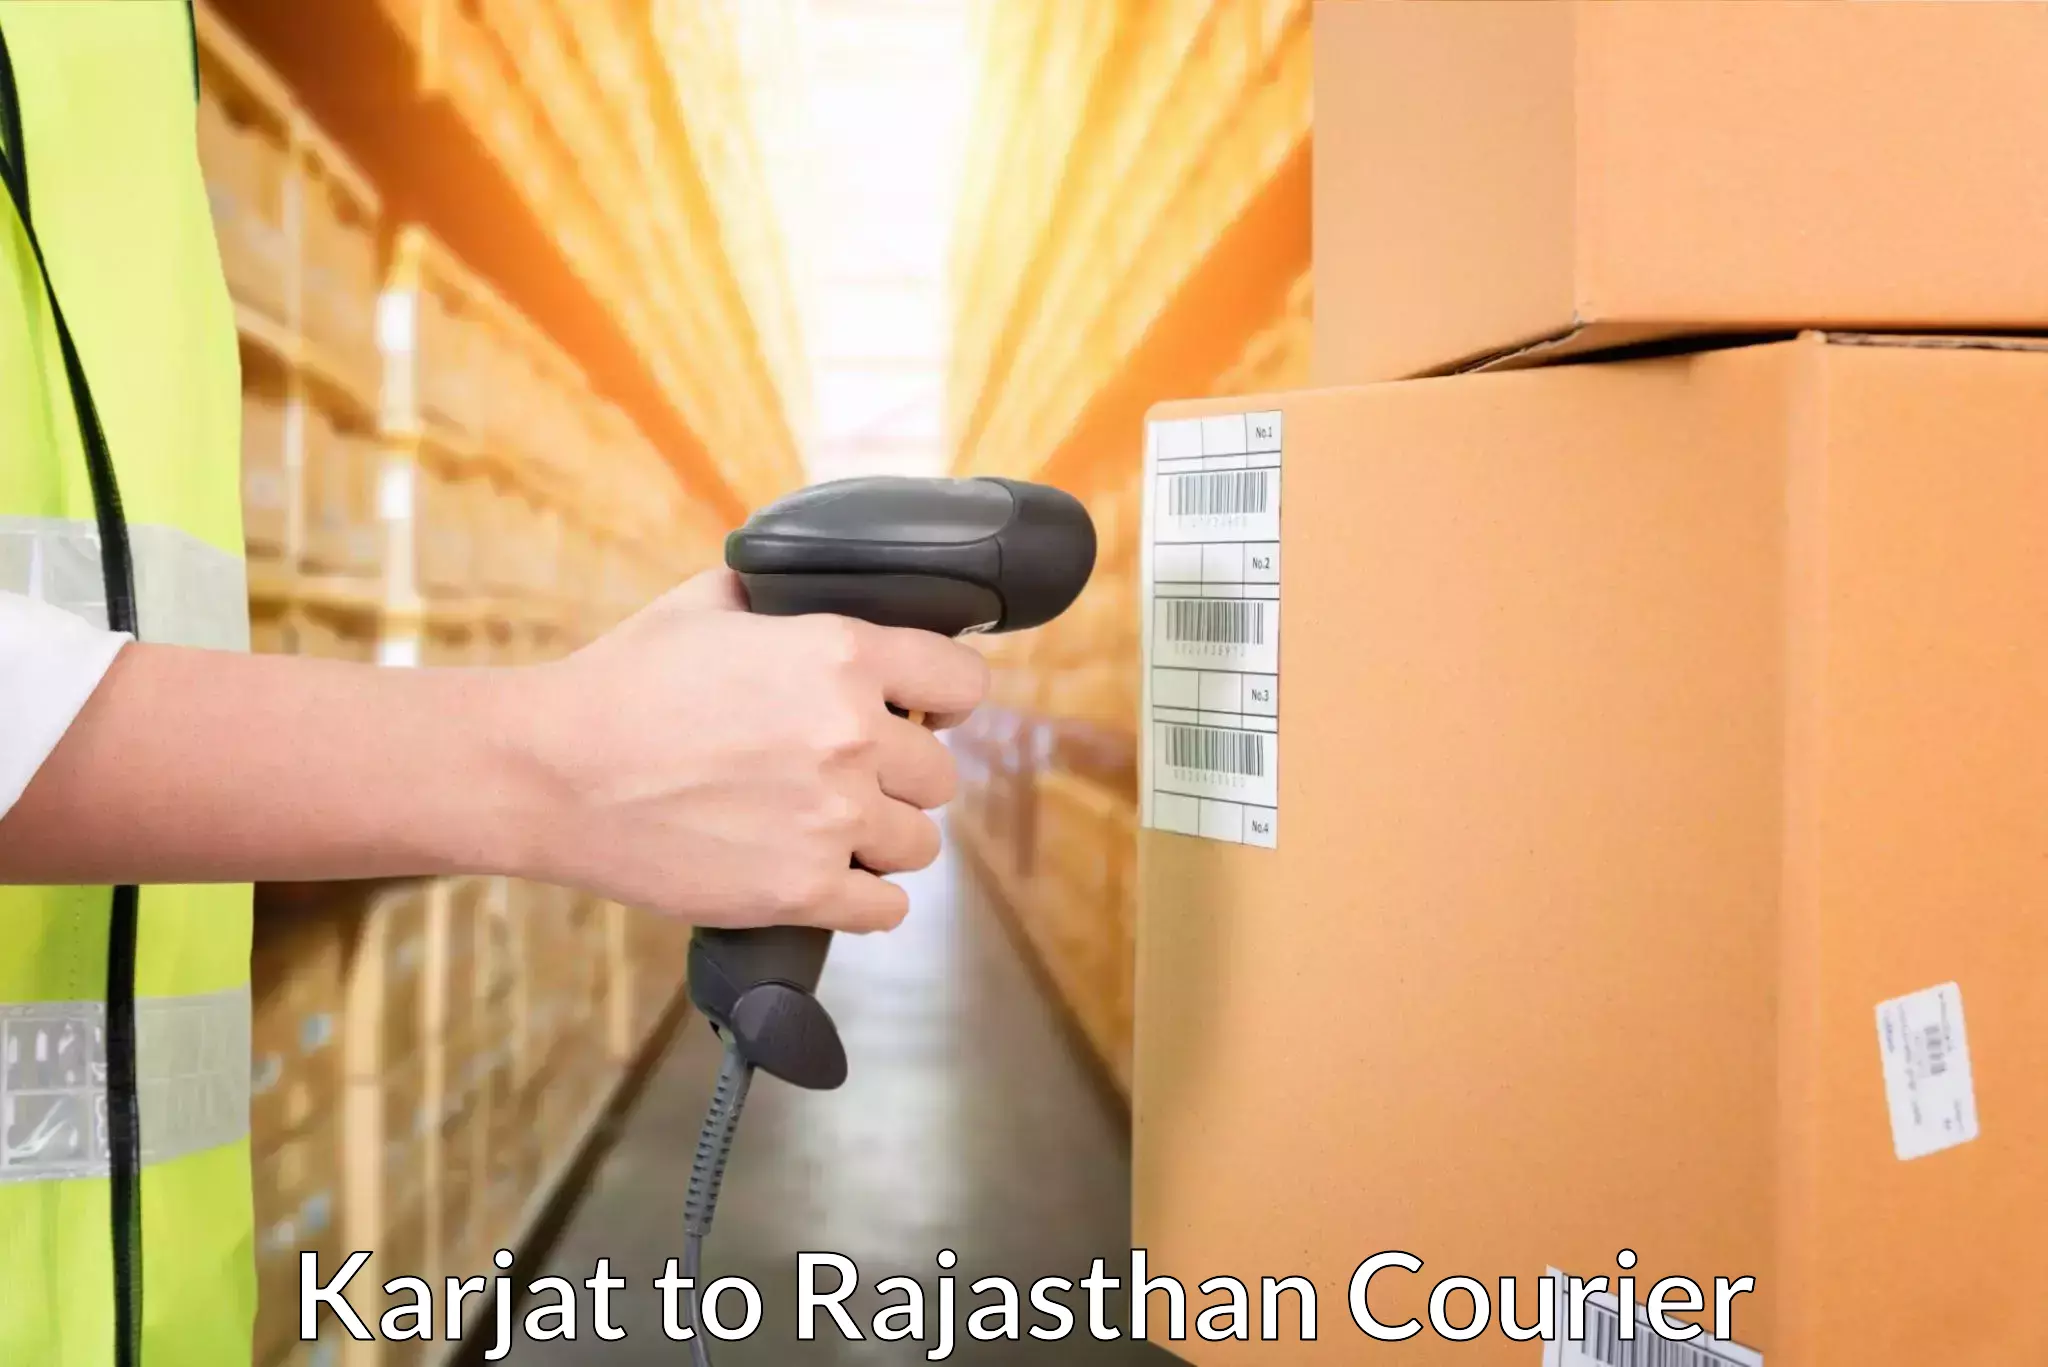 Fast shipping solutions Karjat to Fatehpur Sikar